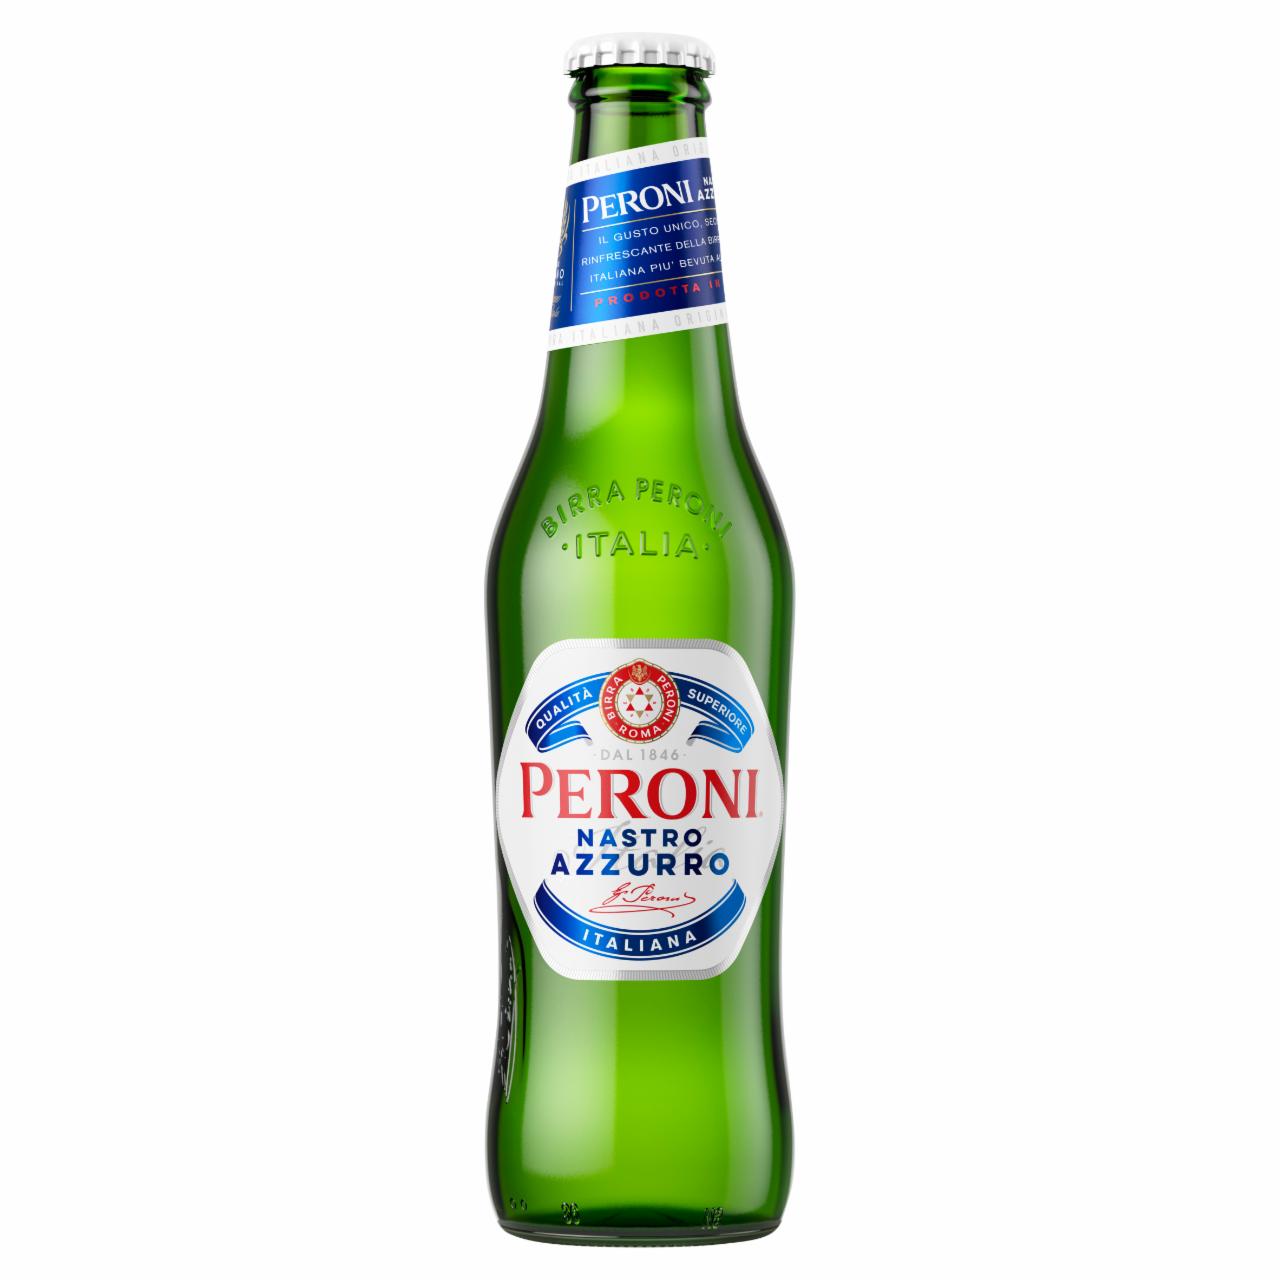 Képek - Peroni Nastro Azzurro minőségi világos sör 5% 0,33 l